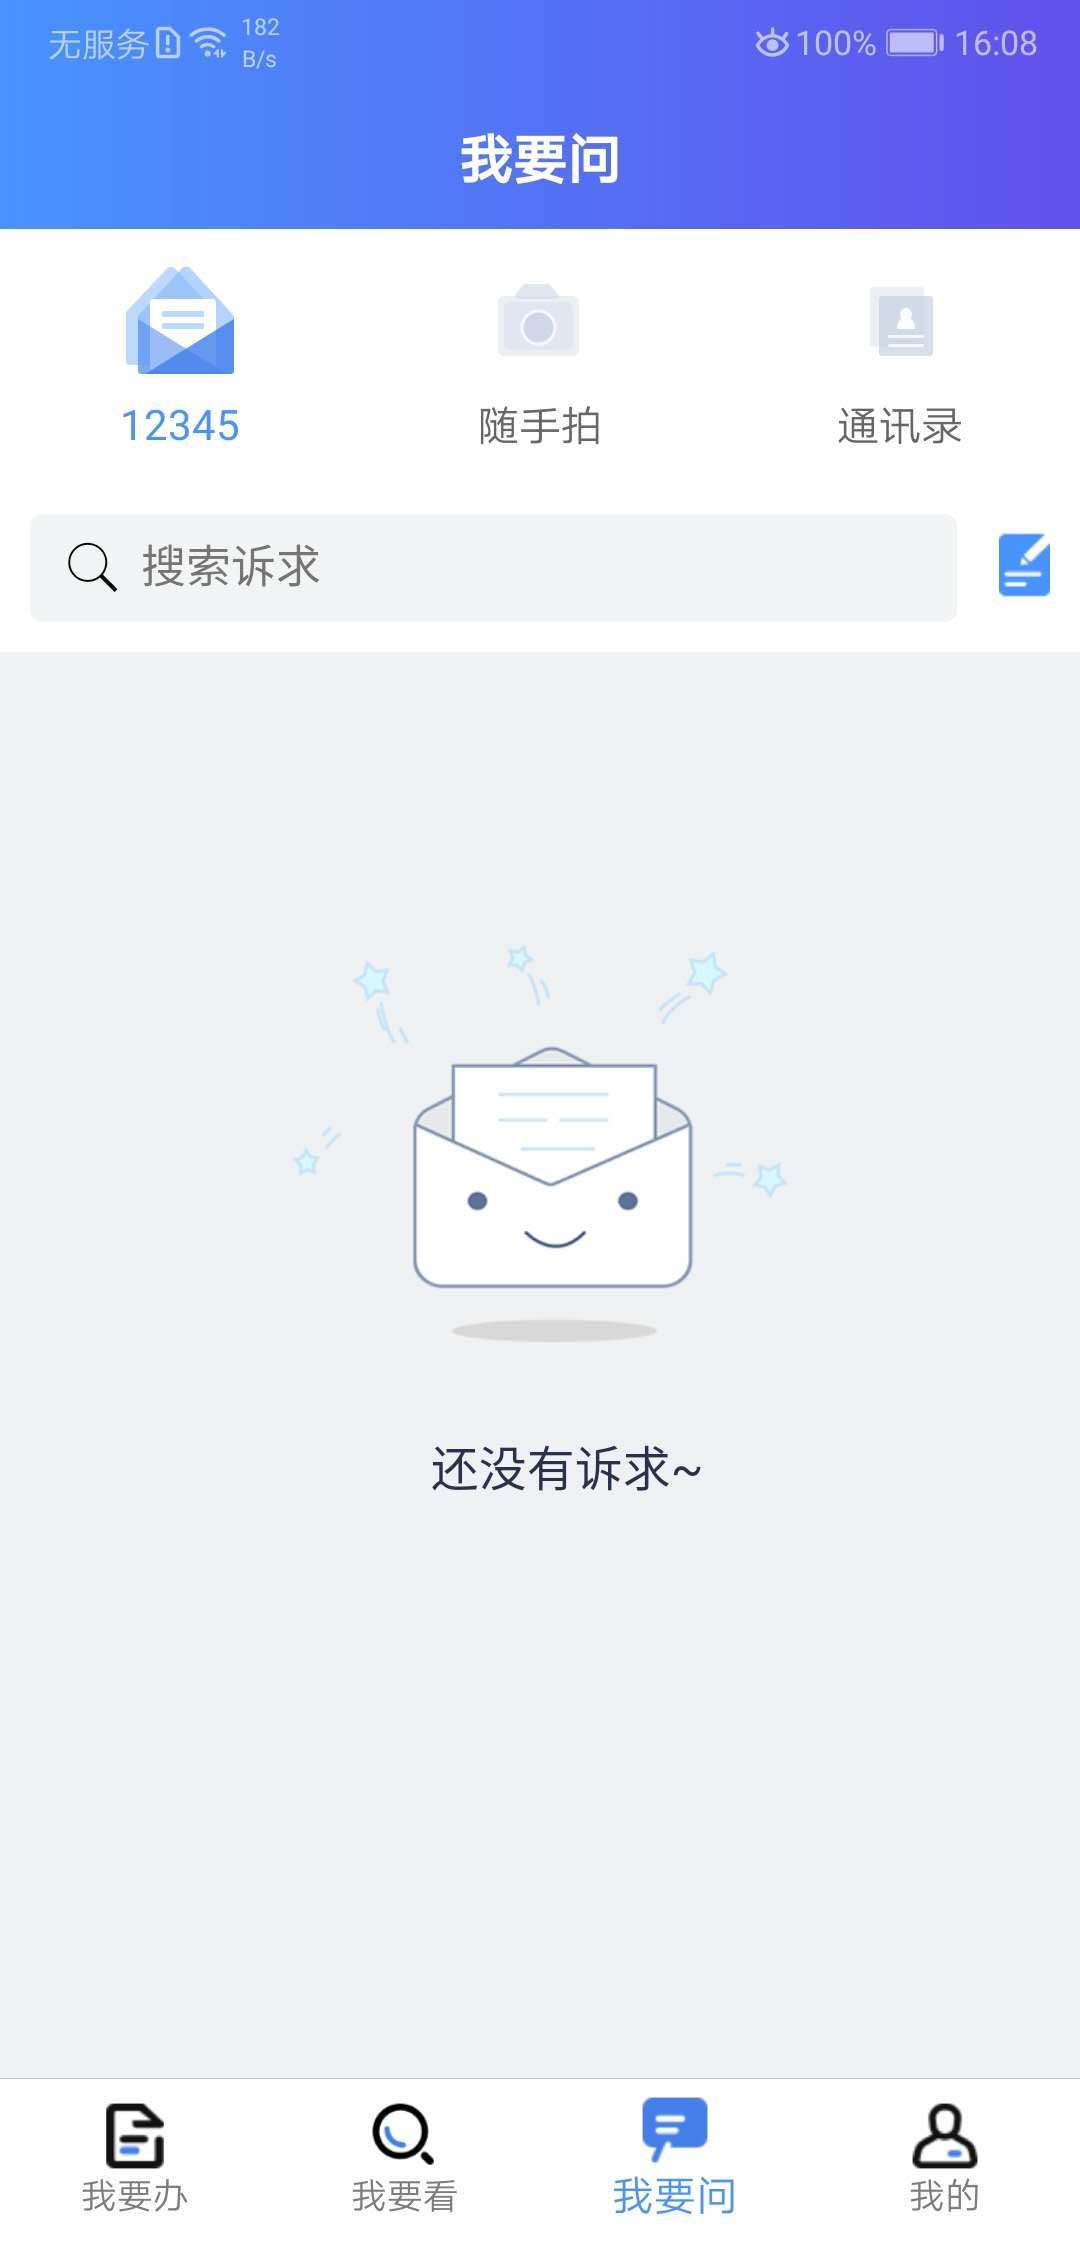 我的连云港app下载 第1张图片